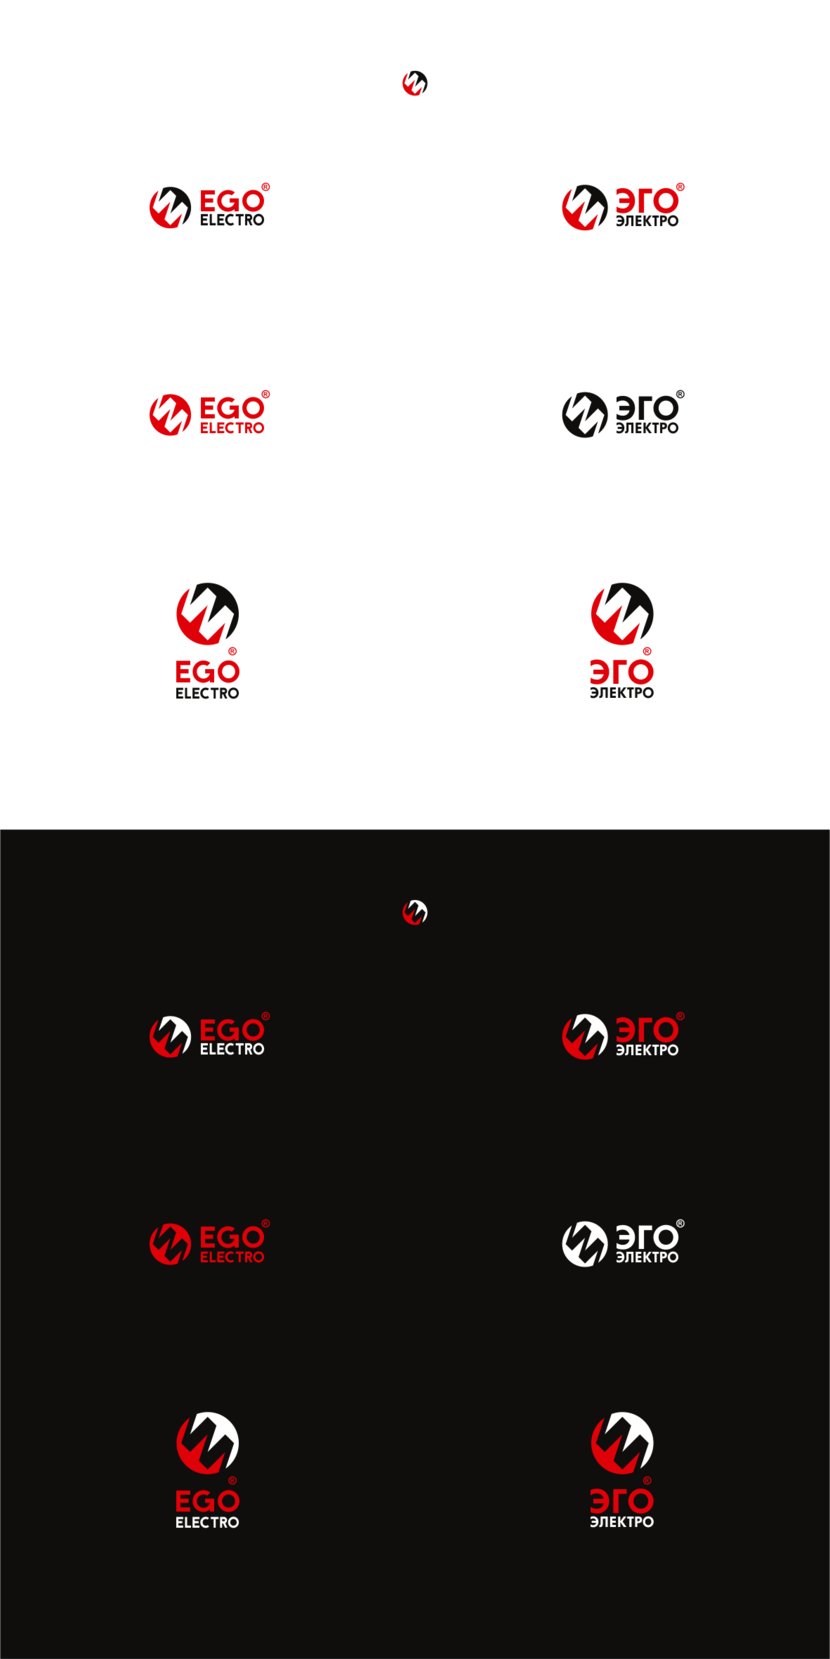 EGO electro - Разработка логотипа для производителя электротехнического оборудования